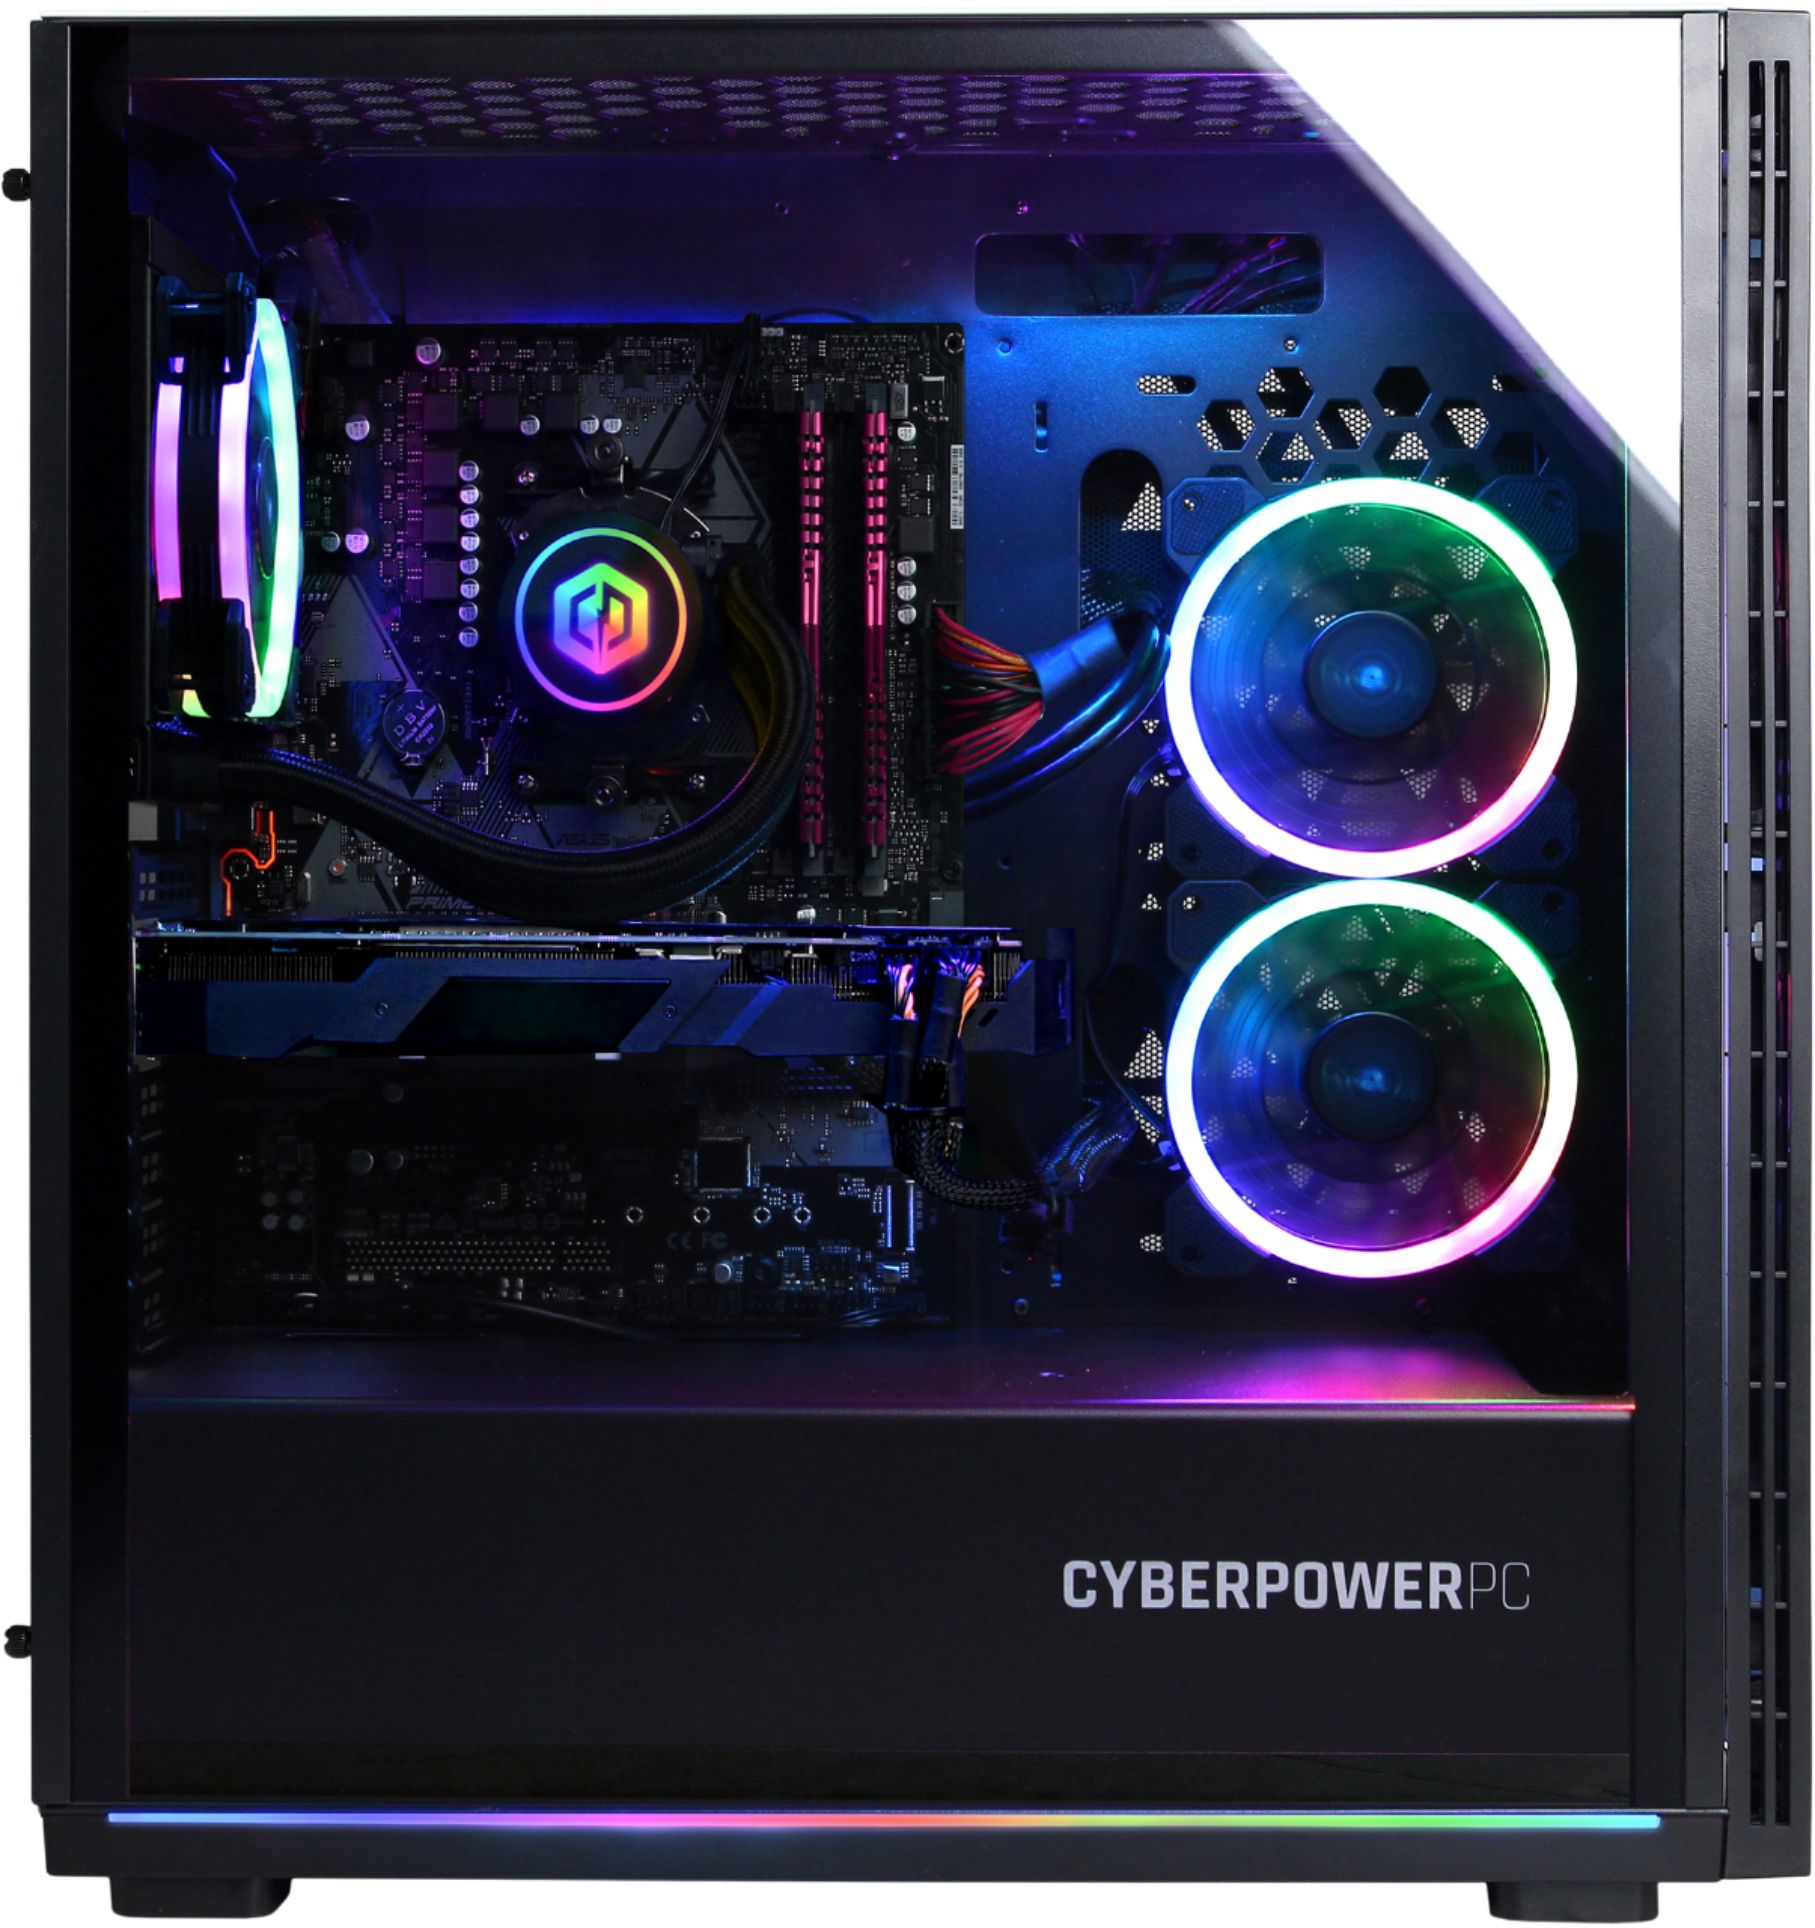 Best Buy: CyberPowerPC Gaming Desktop Intel Core i9-9900K 16GB 